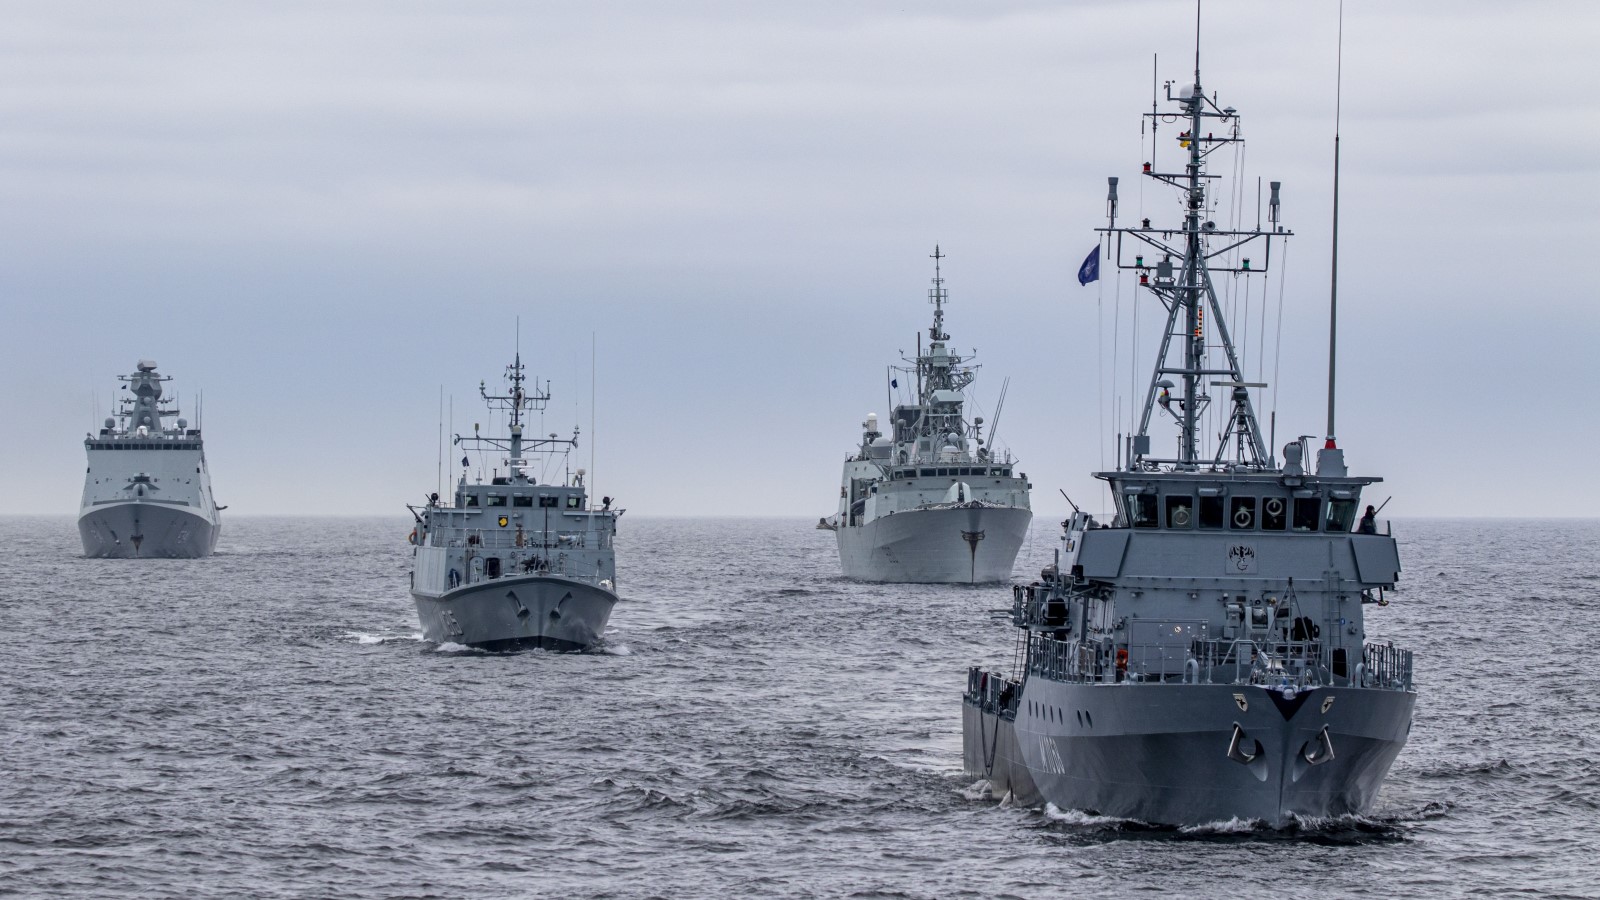 ##MCECOPY##Les navires de guerre du 1er Groupe maritime permanent OTAN et du 1er Groupe permanent OTAN de lutte contre les mines